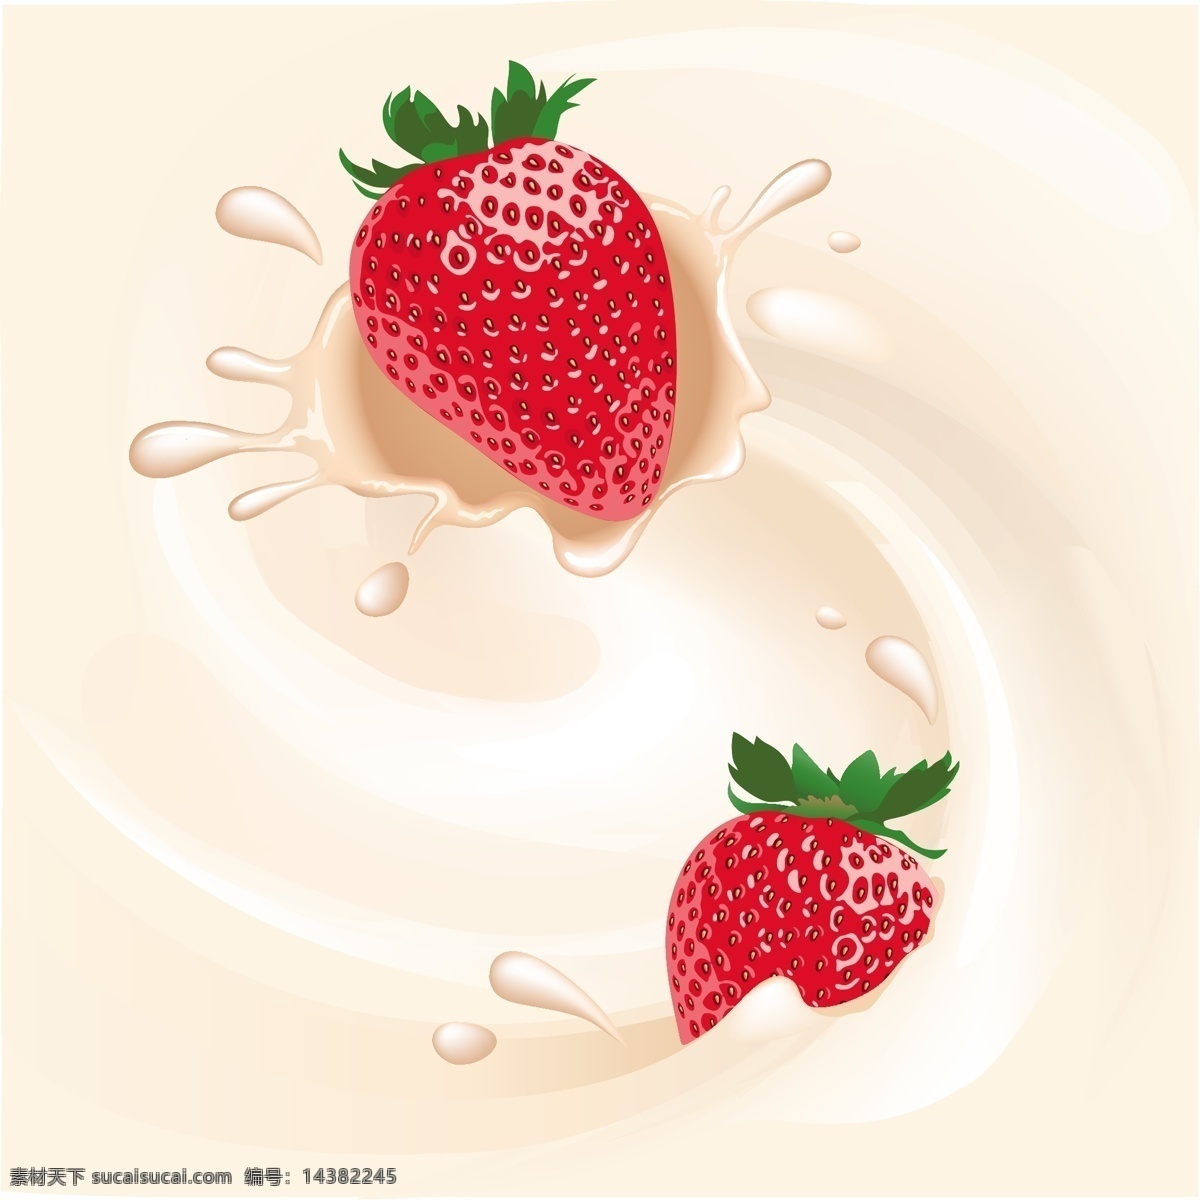 牛奶 里 草莓 矢量 模板下载 水珠 喷溅 水果 标志图标 矢量素材 白色